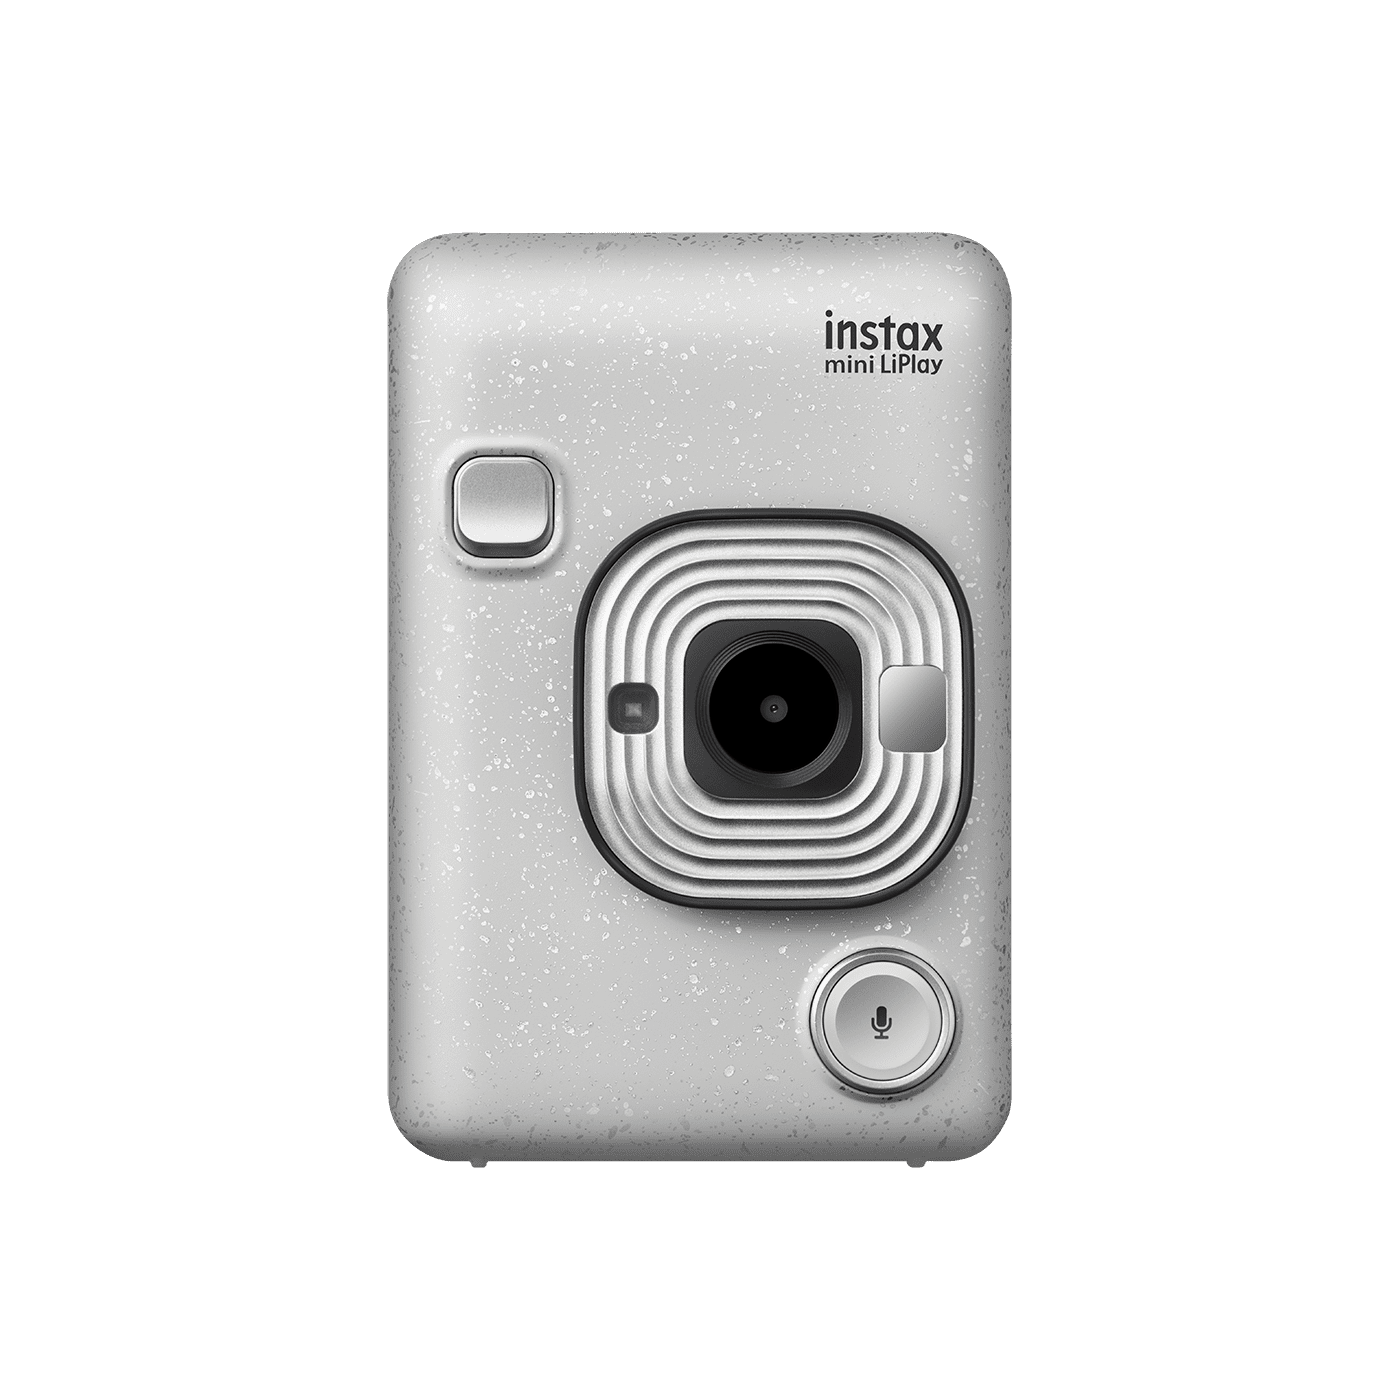 Mini LiPlay Digital Camera by instax